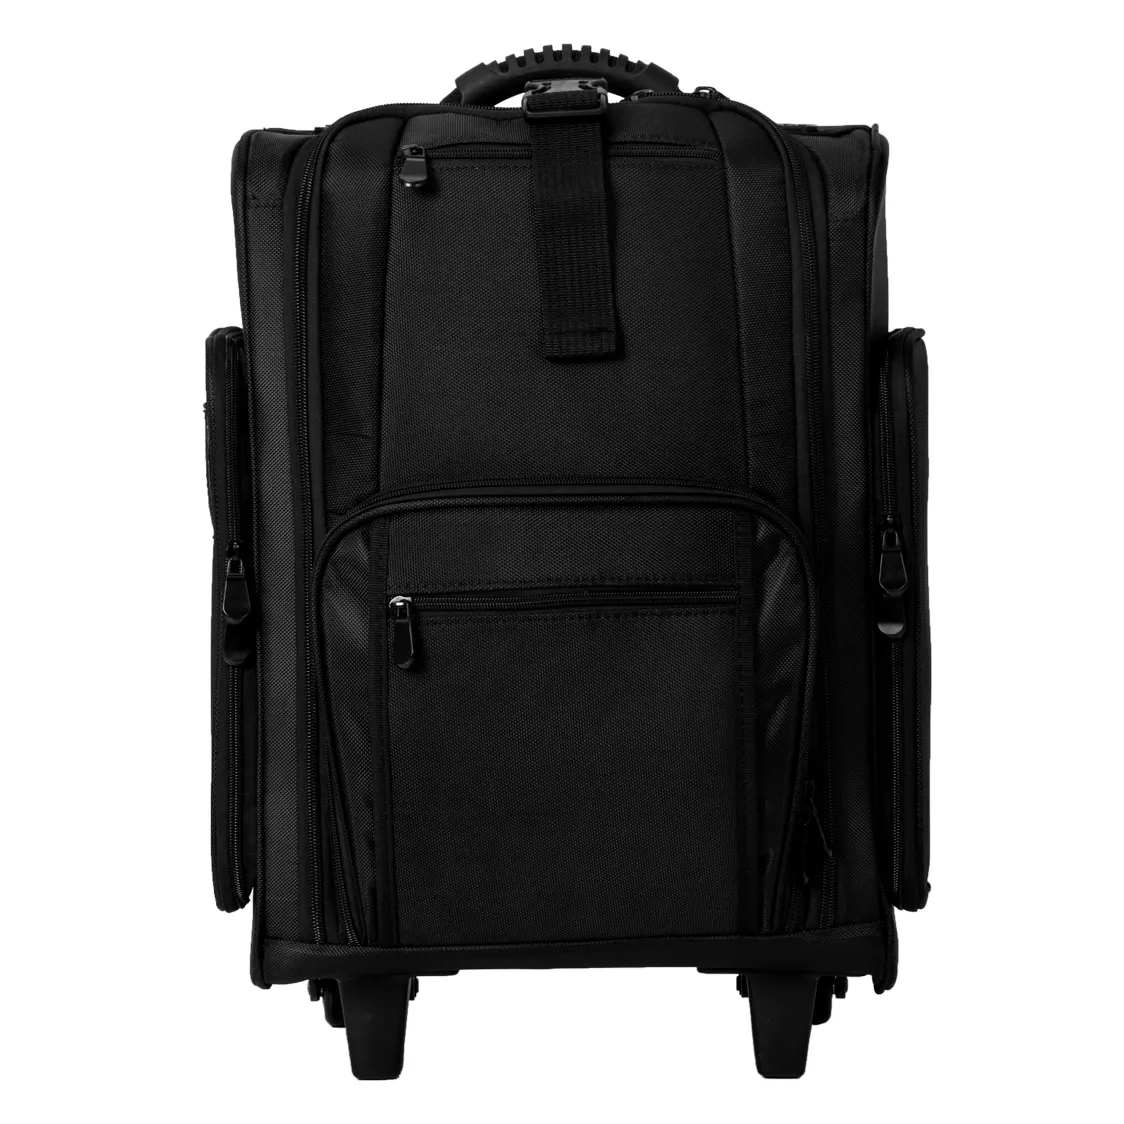 KONCAI FAMA fabrika klasik siyah yüksek kalite profesyonel arabası çantası kozmetik naylon tren vaka tekerlekli makyaj çantası